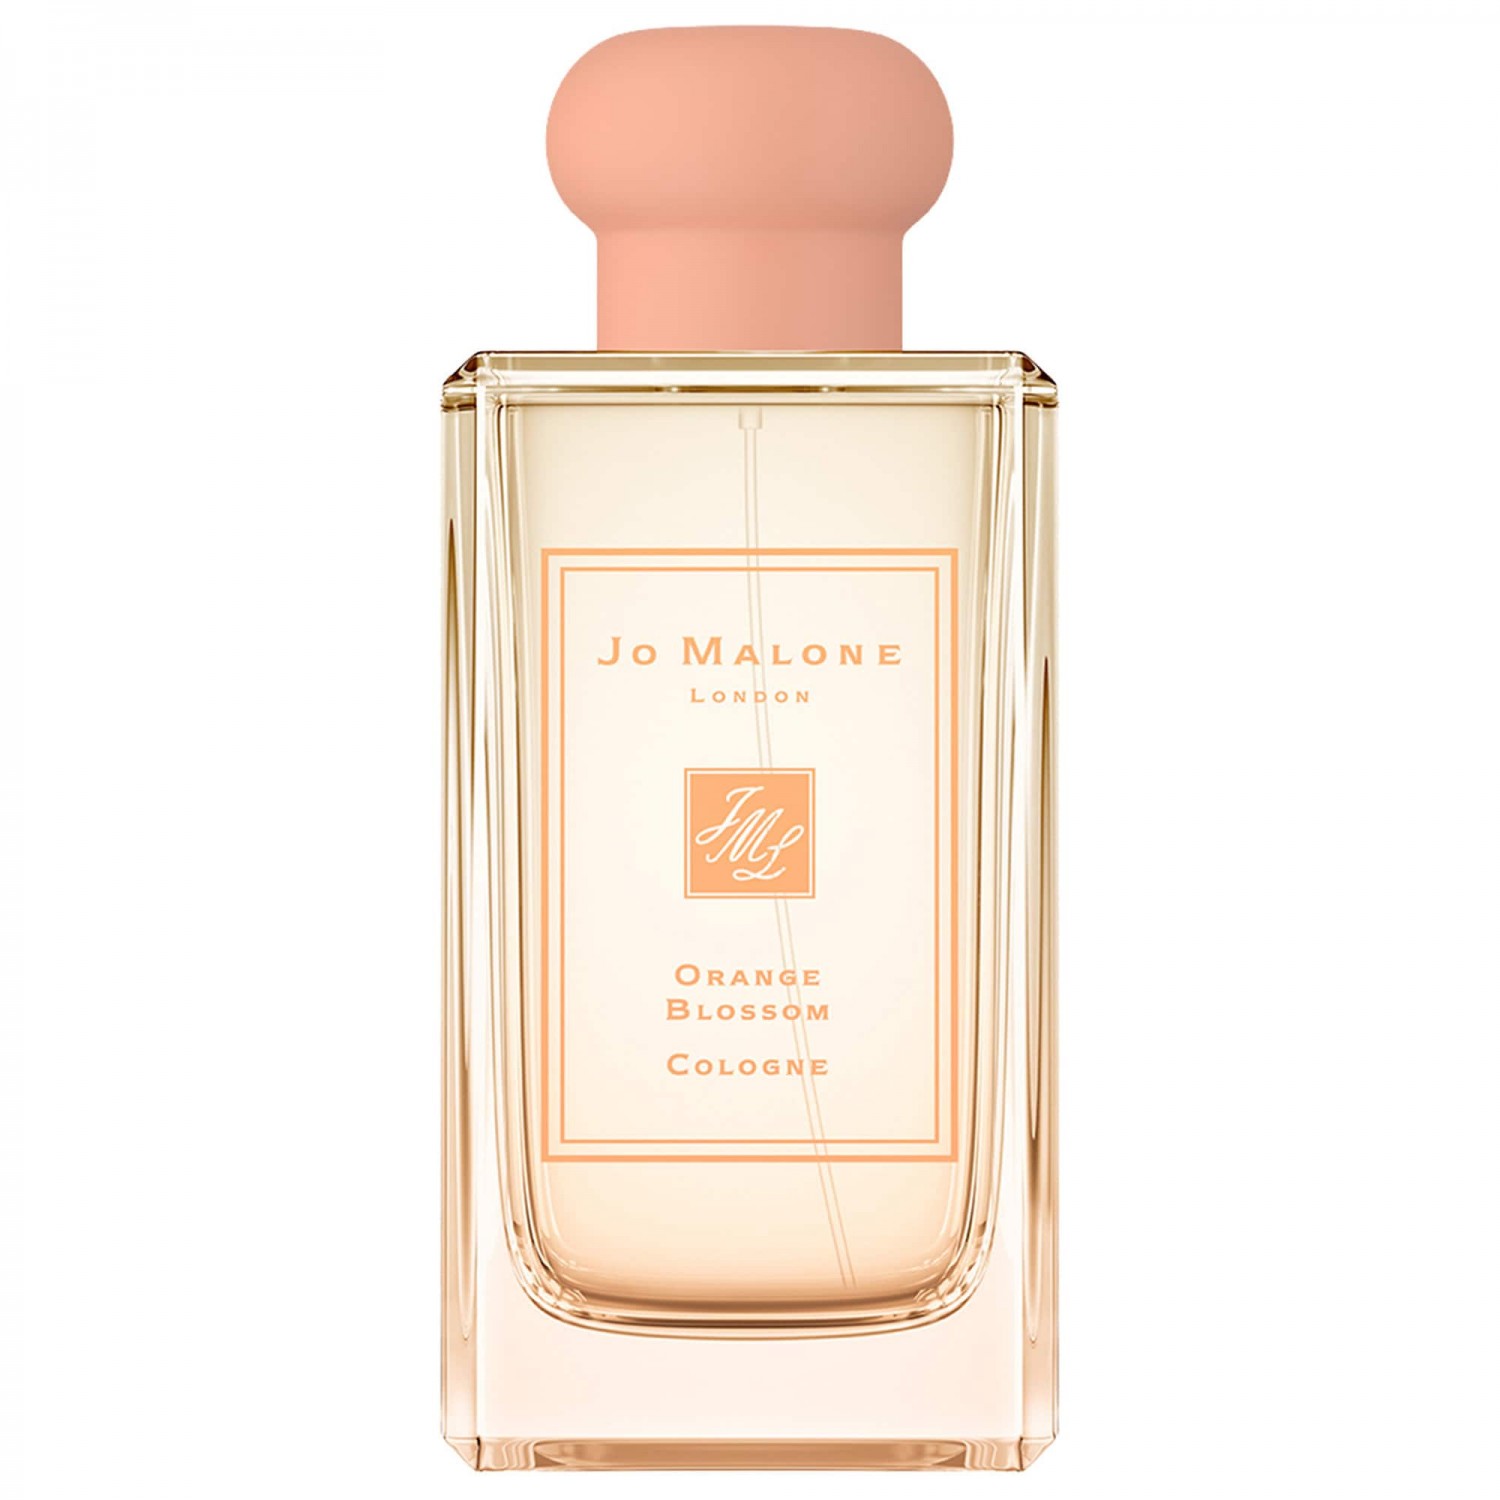 Jo Malone London Orange Blossom Cologne Perfume